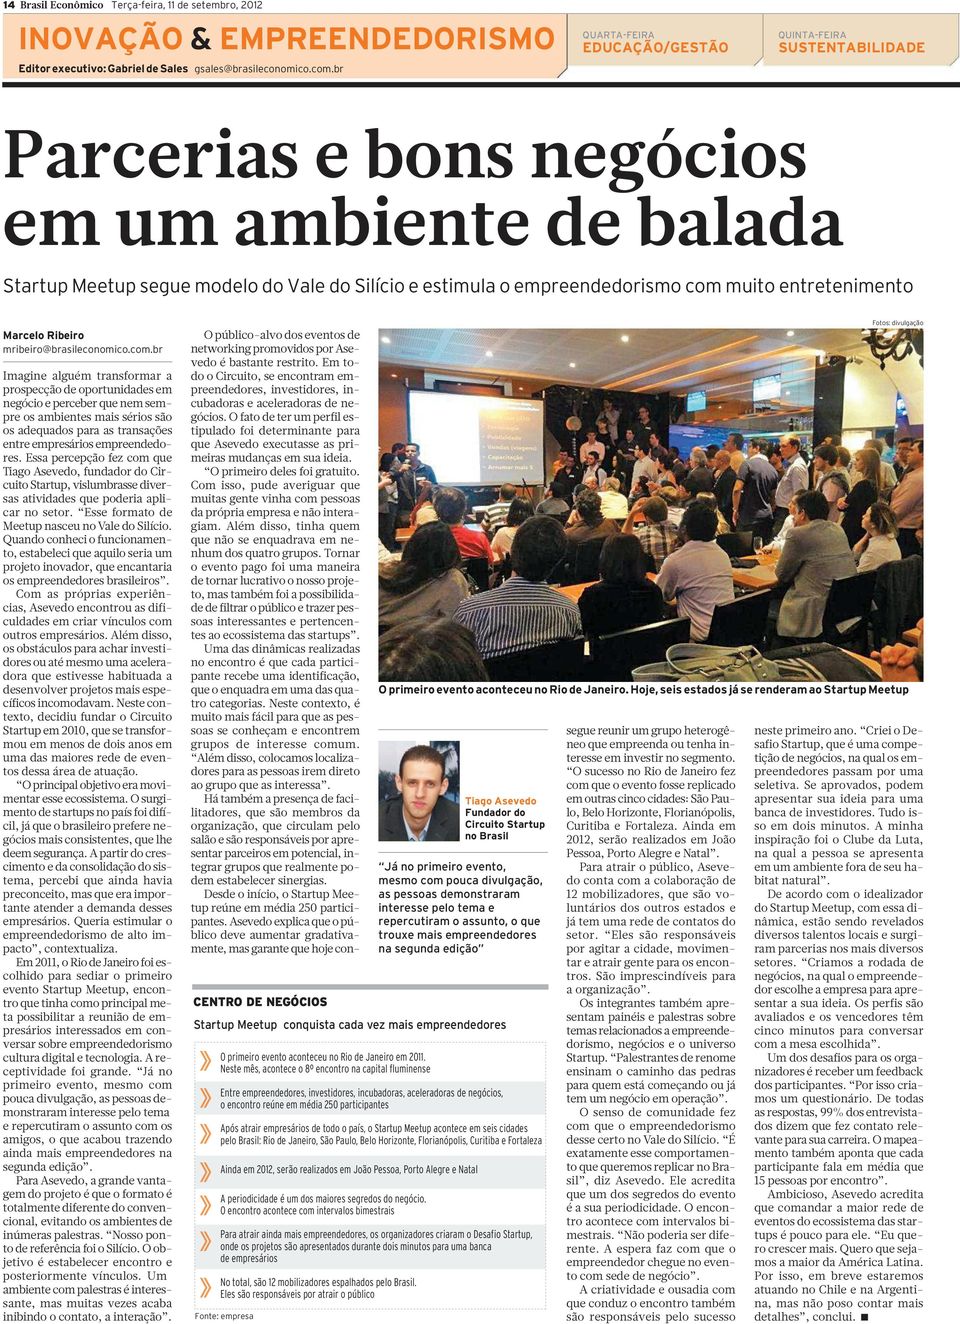 entretenimento Marcelo Ribeiro mribeiro@brasileconomico.com.